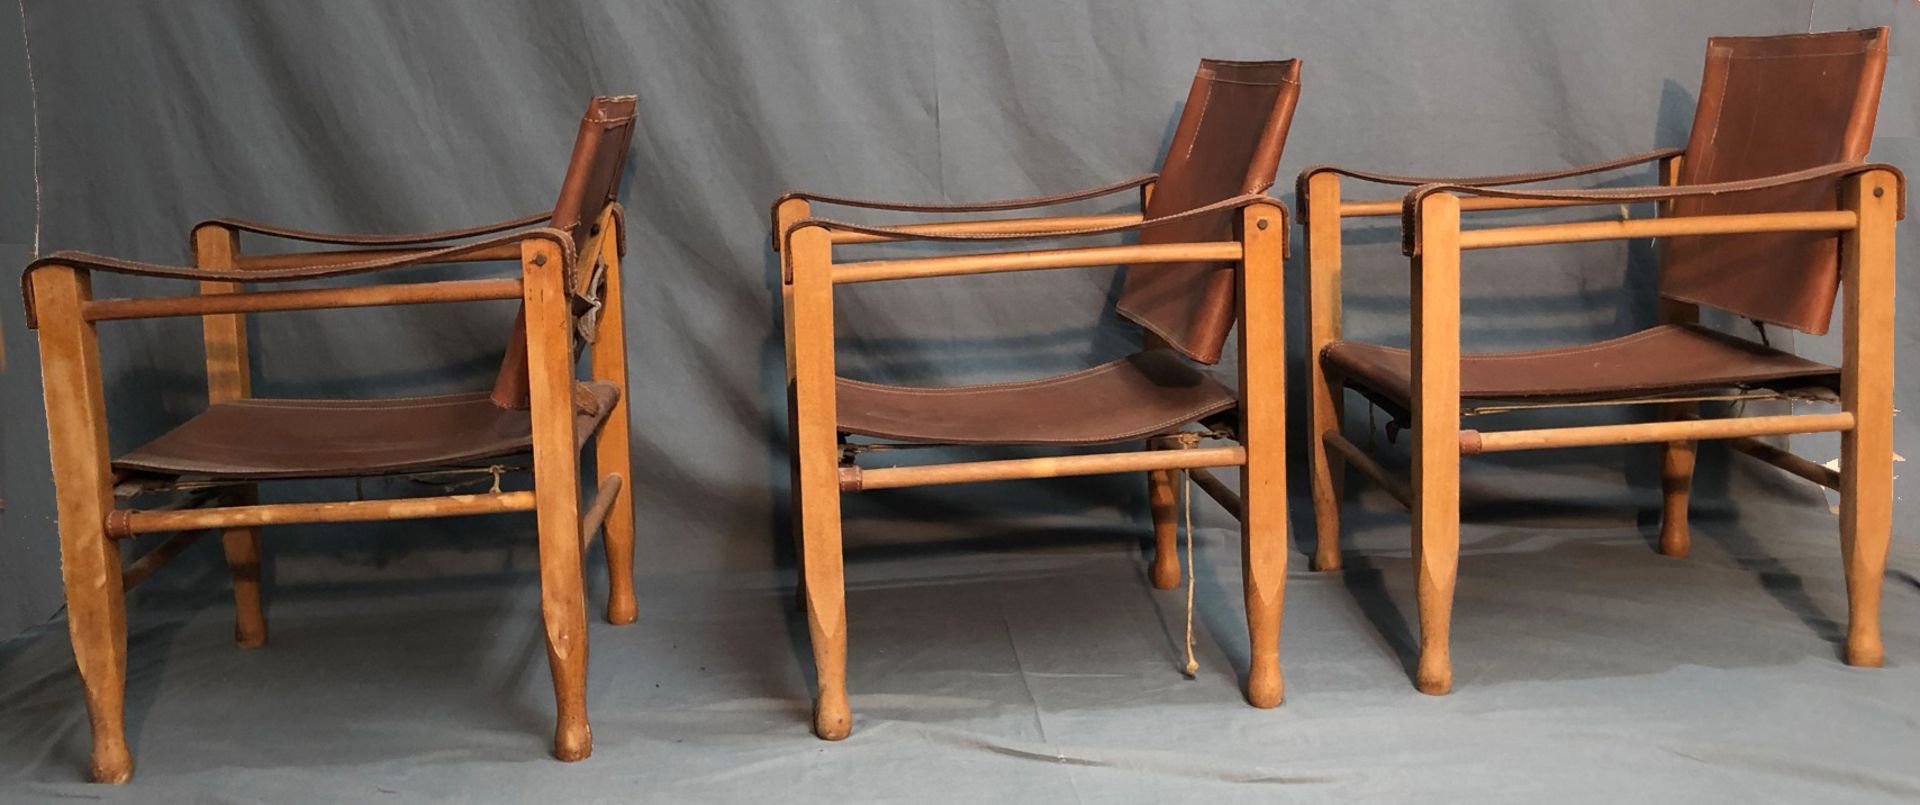 3 Safari Chair. Leder und Holz. Wohl Design von Wilhelm KIENZLE (1886-1958). - Bild 6 aus 13